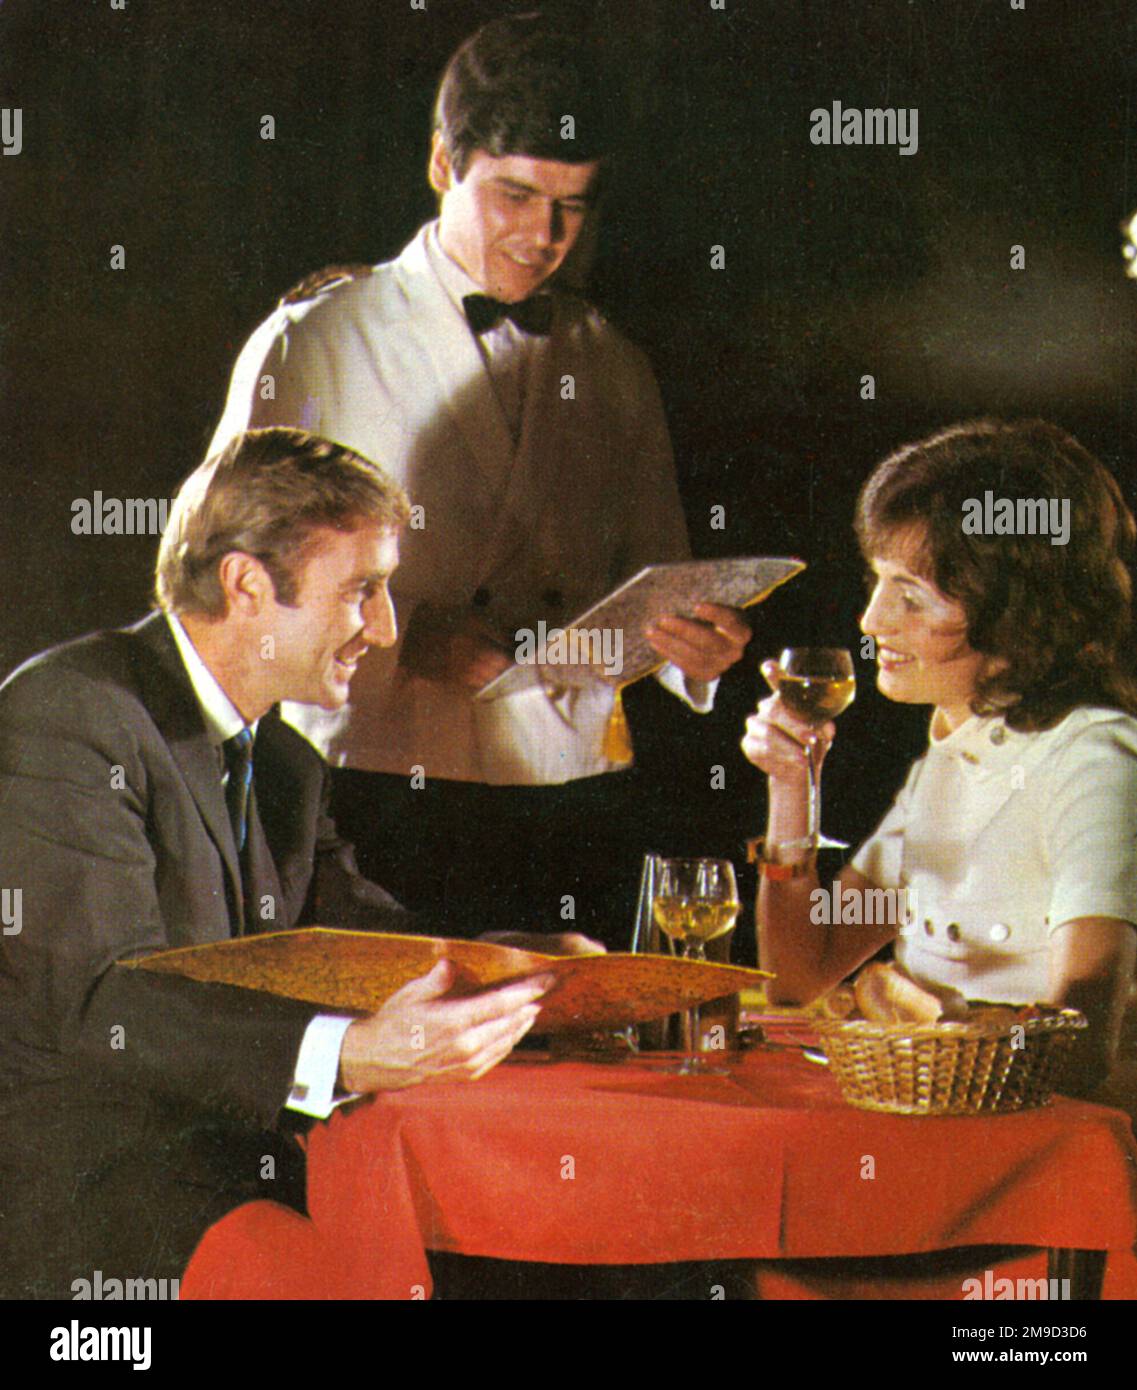 Werbung für Forte's Restaurants, die ein Paar an einem Tisch zeigt, während ein Kellner ihre Bestellung aufnimmt. Diese nationale Restaurantkette benutzte auch die Namen Quality Inn, Kardomah und Fuller. Stockfoto